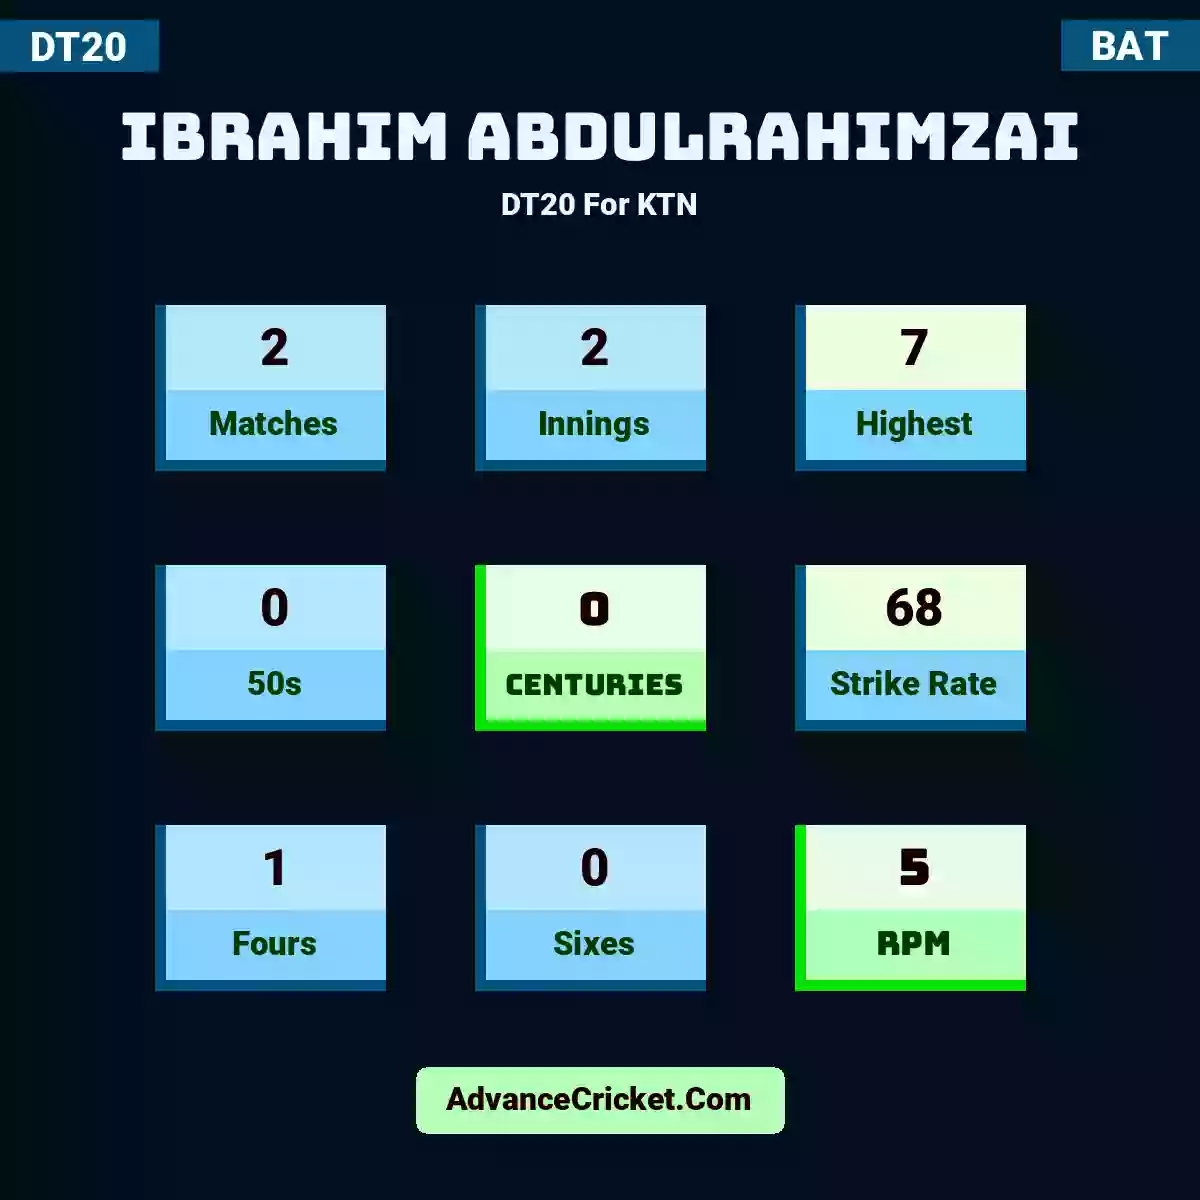 Ibrahim Abdulrahimzai DT20  For KTN, Ibrahim Abdulrahimzai played 2 matches, scored 7 runs as highest, 0 half-centuries, and 0 centuries, with a strike rate of 68. I.Abdulrahimzai hit 1 fours and 0 sixes, with an RPM of 5.